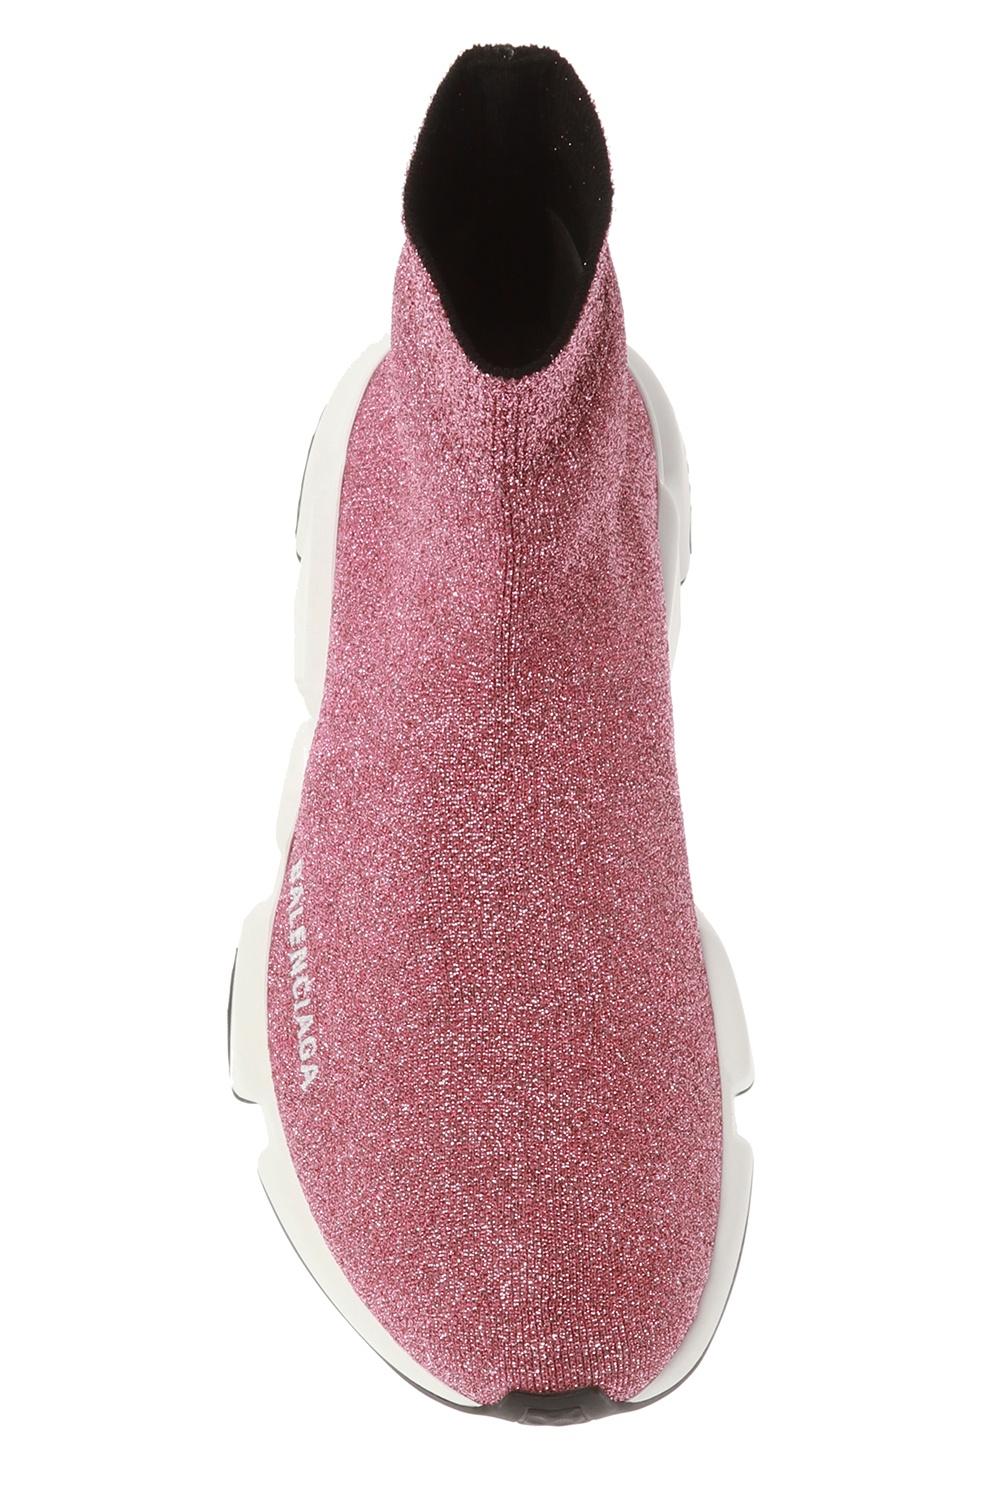 balenciaga pink sock shoes